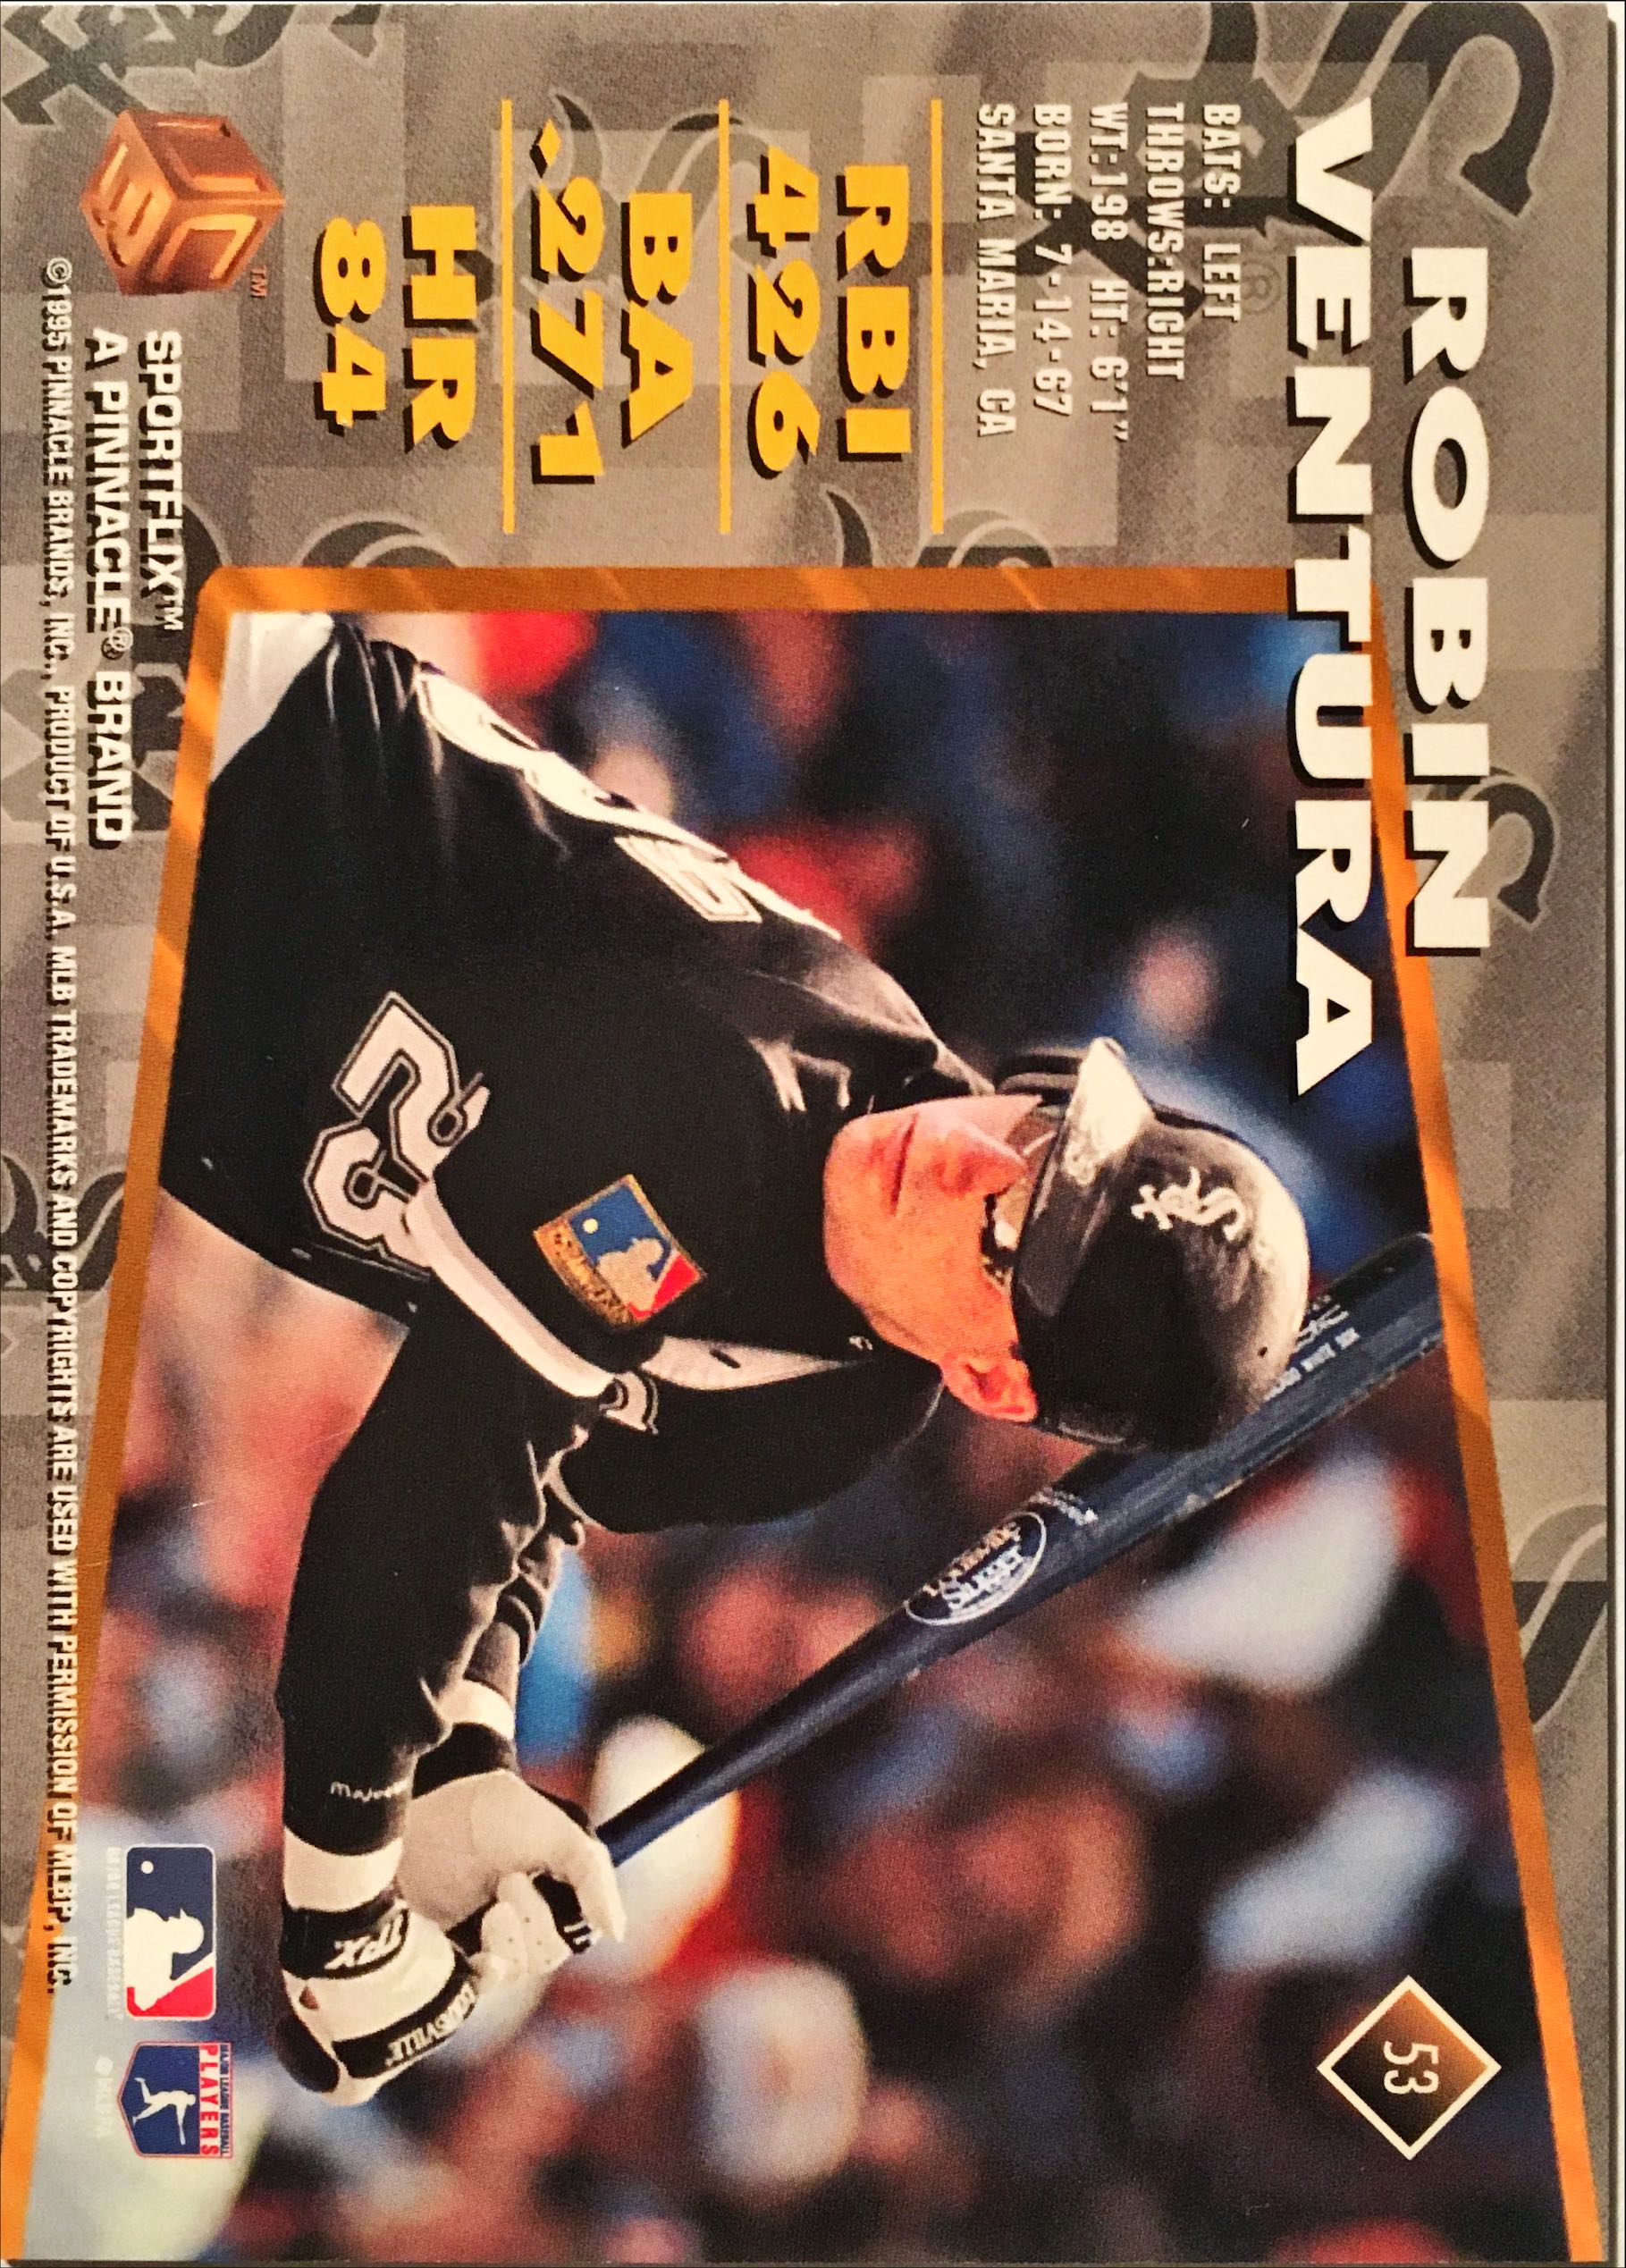 1995 Sportsflics UC3 53 back image